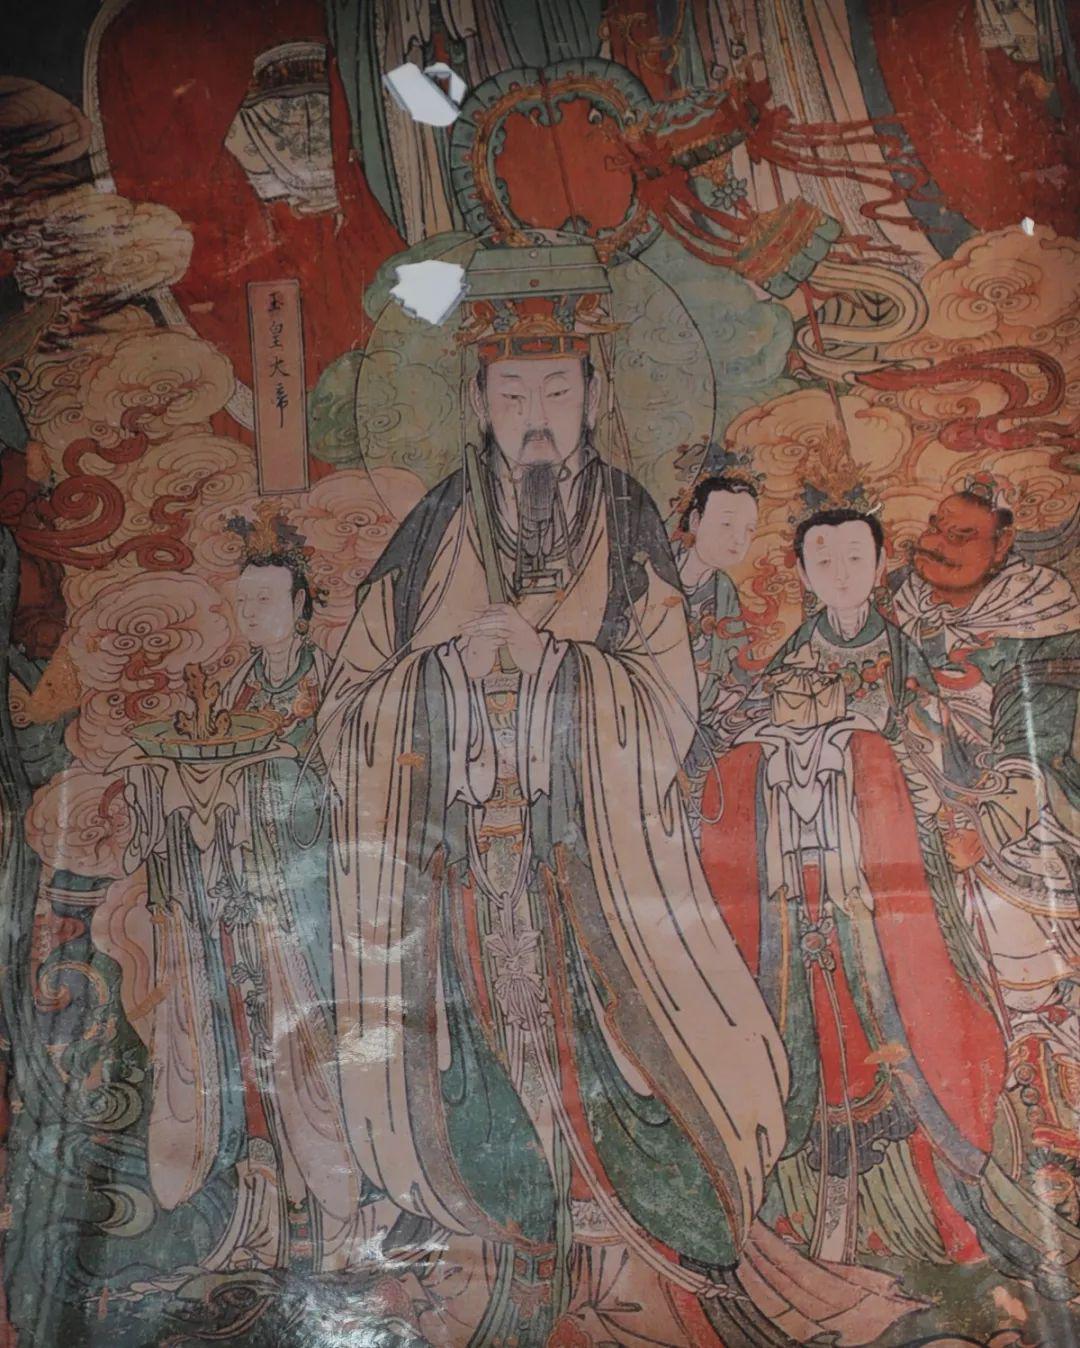 壁画《玉皇大帝》中国画坛自元代始,相继产生了文人画与院画,工匠画的